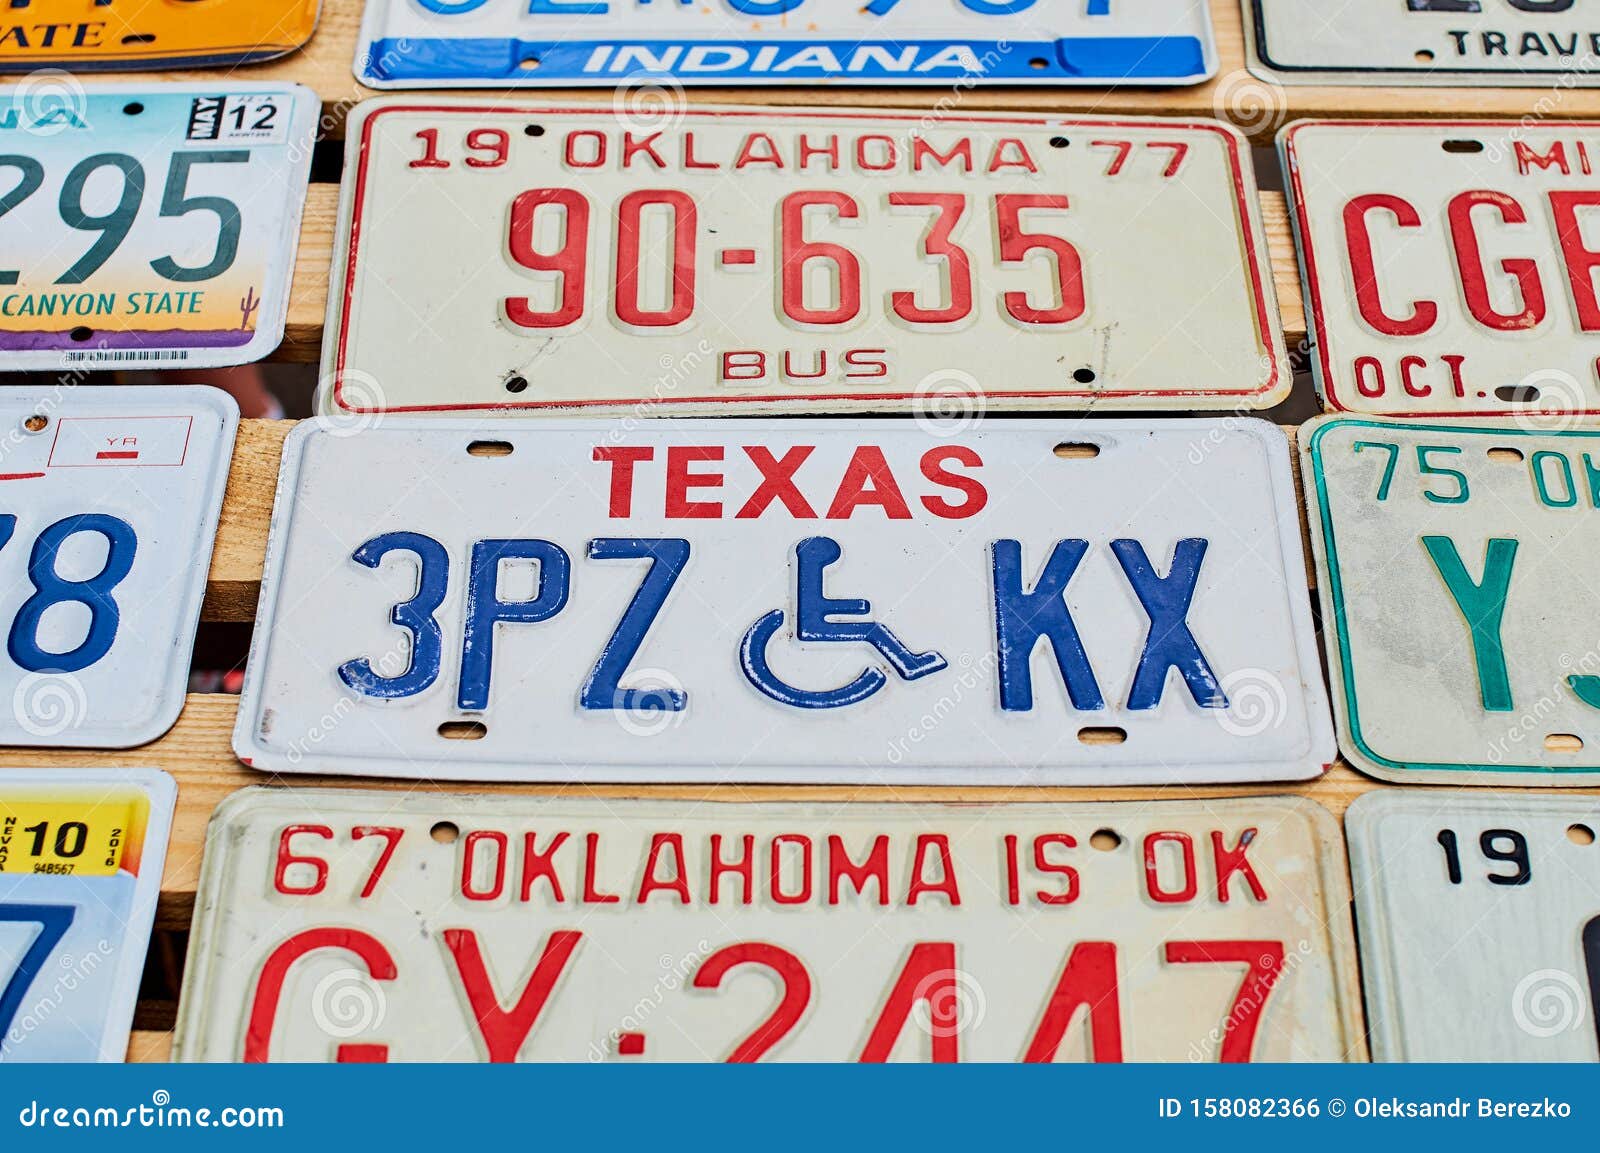 Alte Nicht Mehr Verwendete Autokennzeichen Oder Fahrzeugzulassungsnummern  Aus Verschiedenen US-Bundesstaaten Wie Texas, Oklahoma Redaktionelles Foto  - Bild von auto, hängen: 158082366